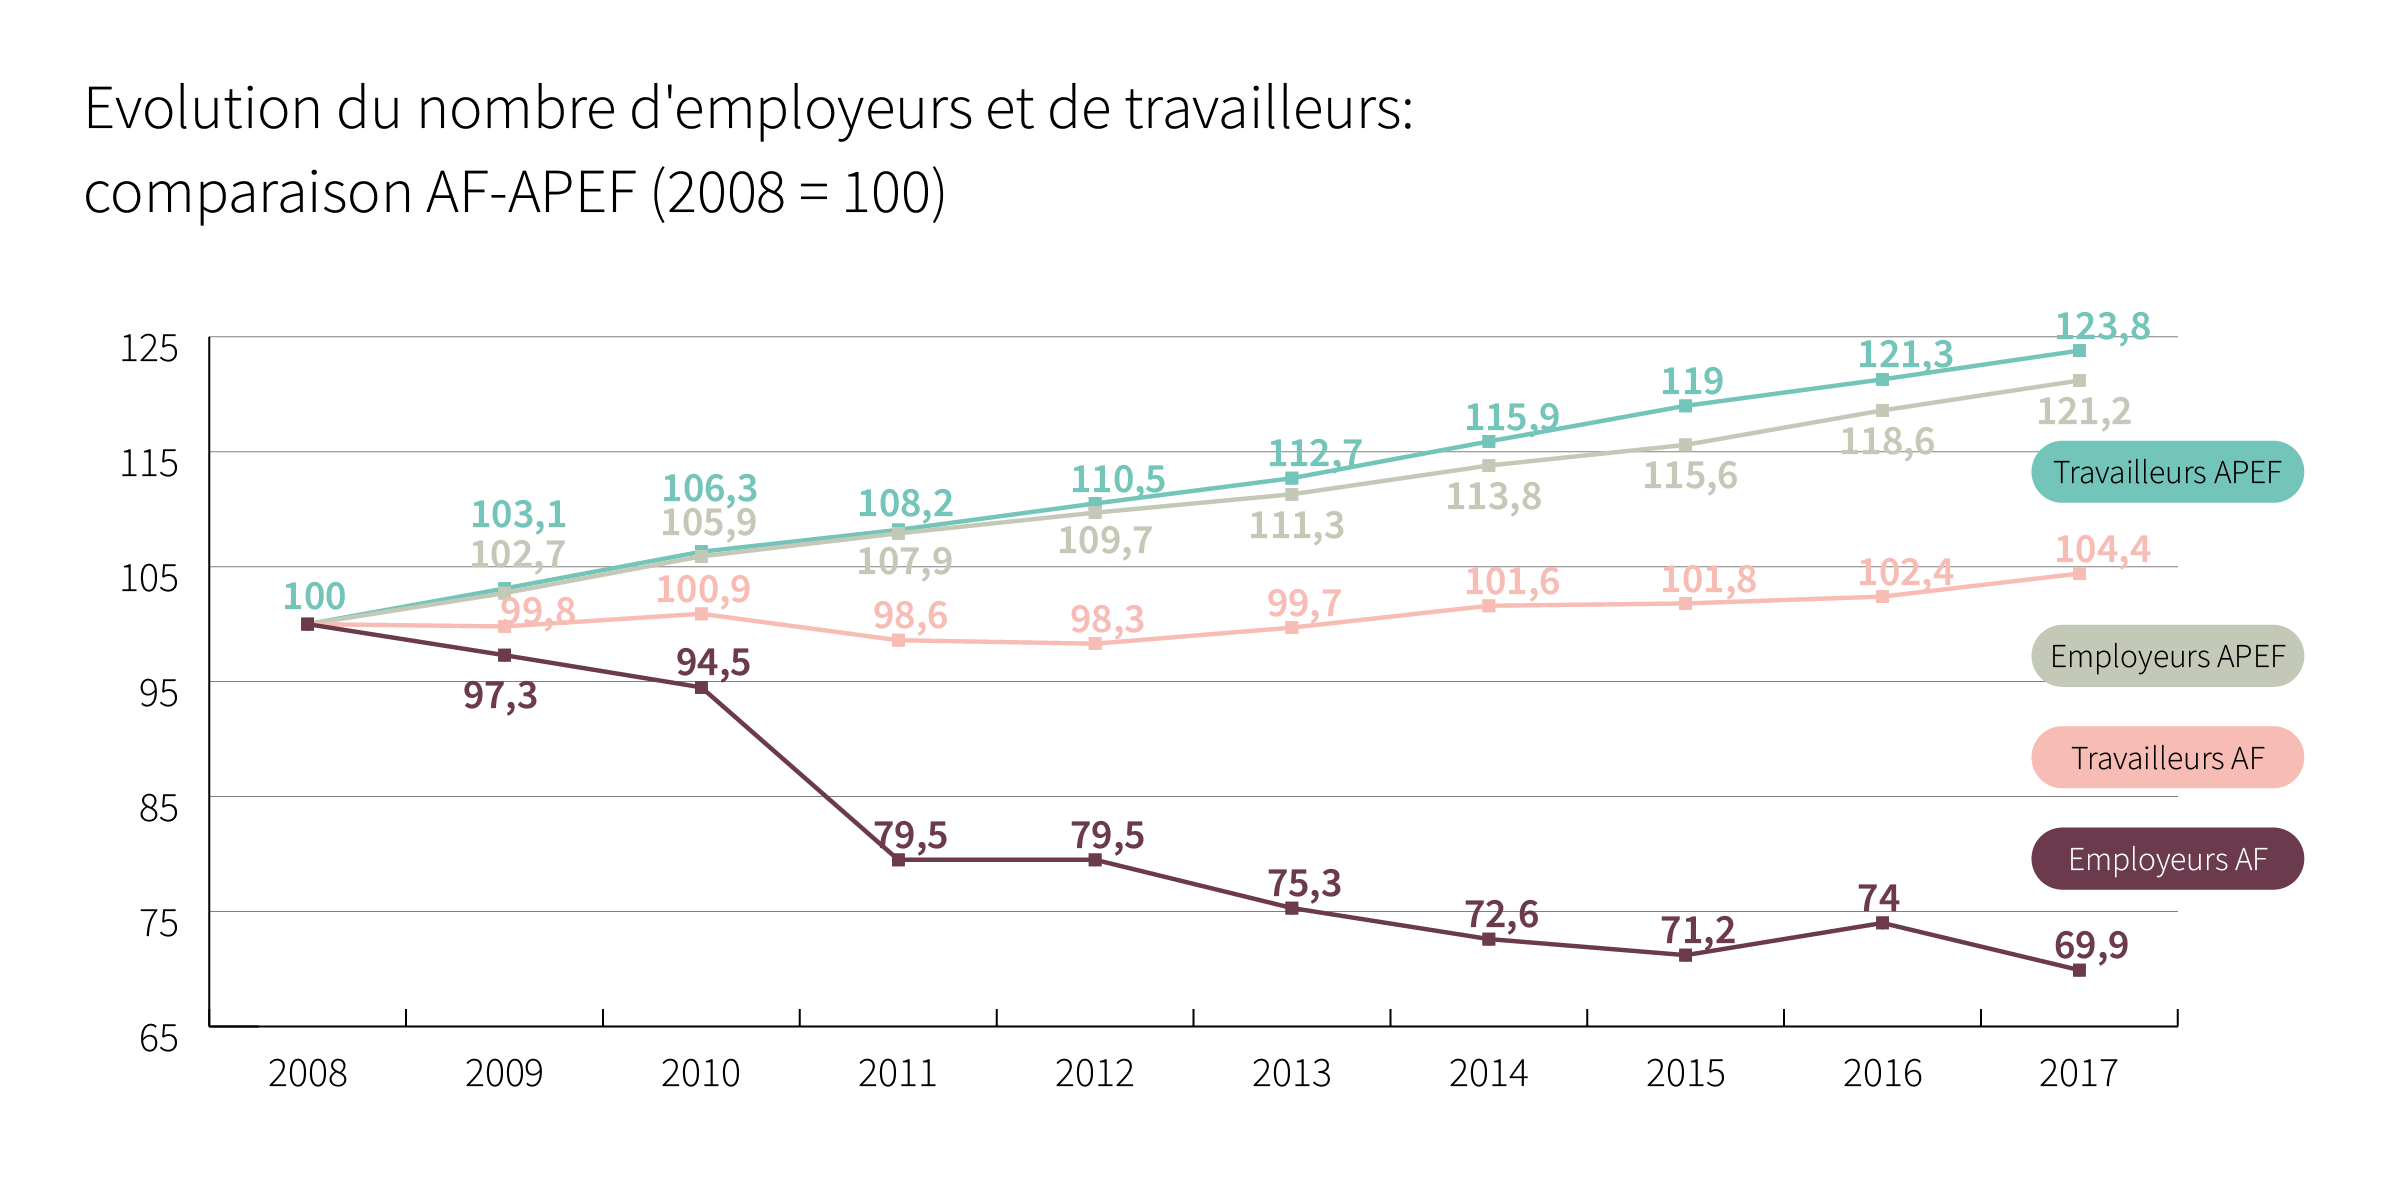 Evolution du nombre d’employeurs et de travailleurs: comparaison AF-APEF (2008 = 100) - Cliquez pour agrandir